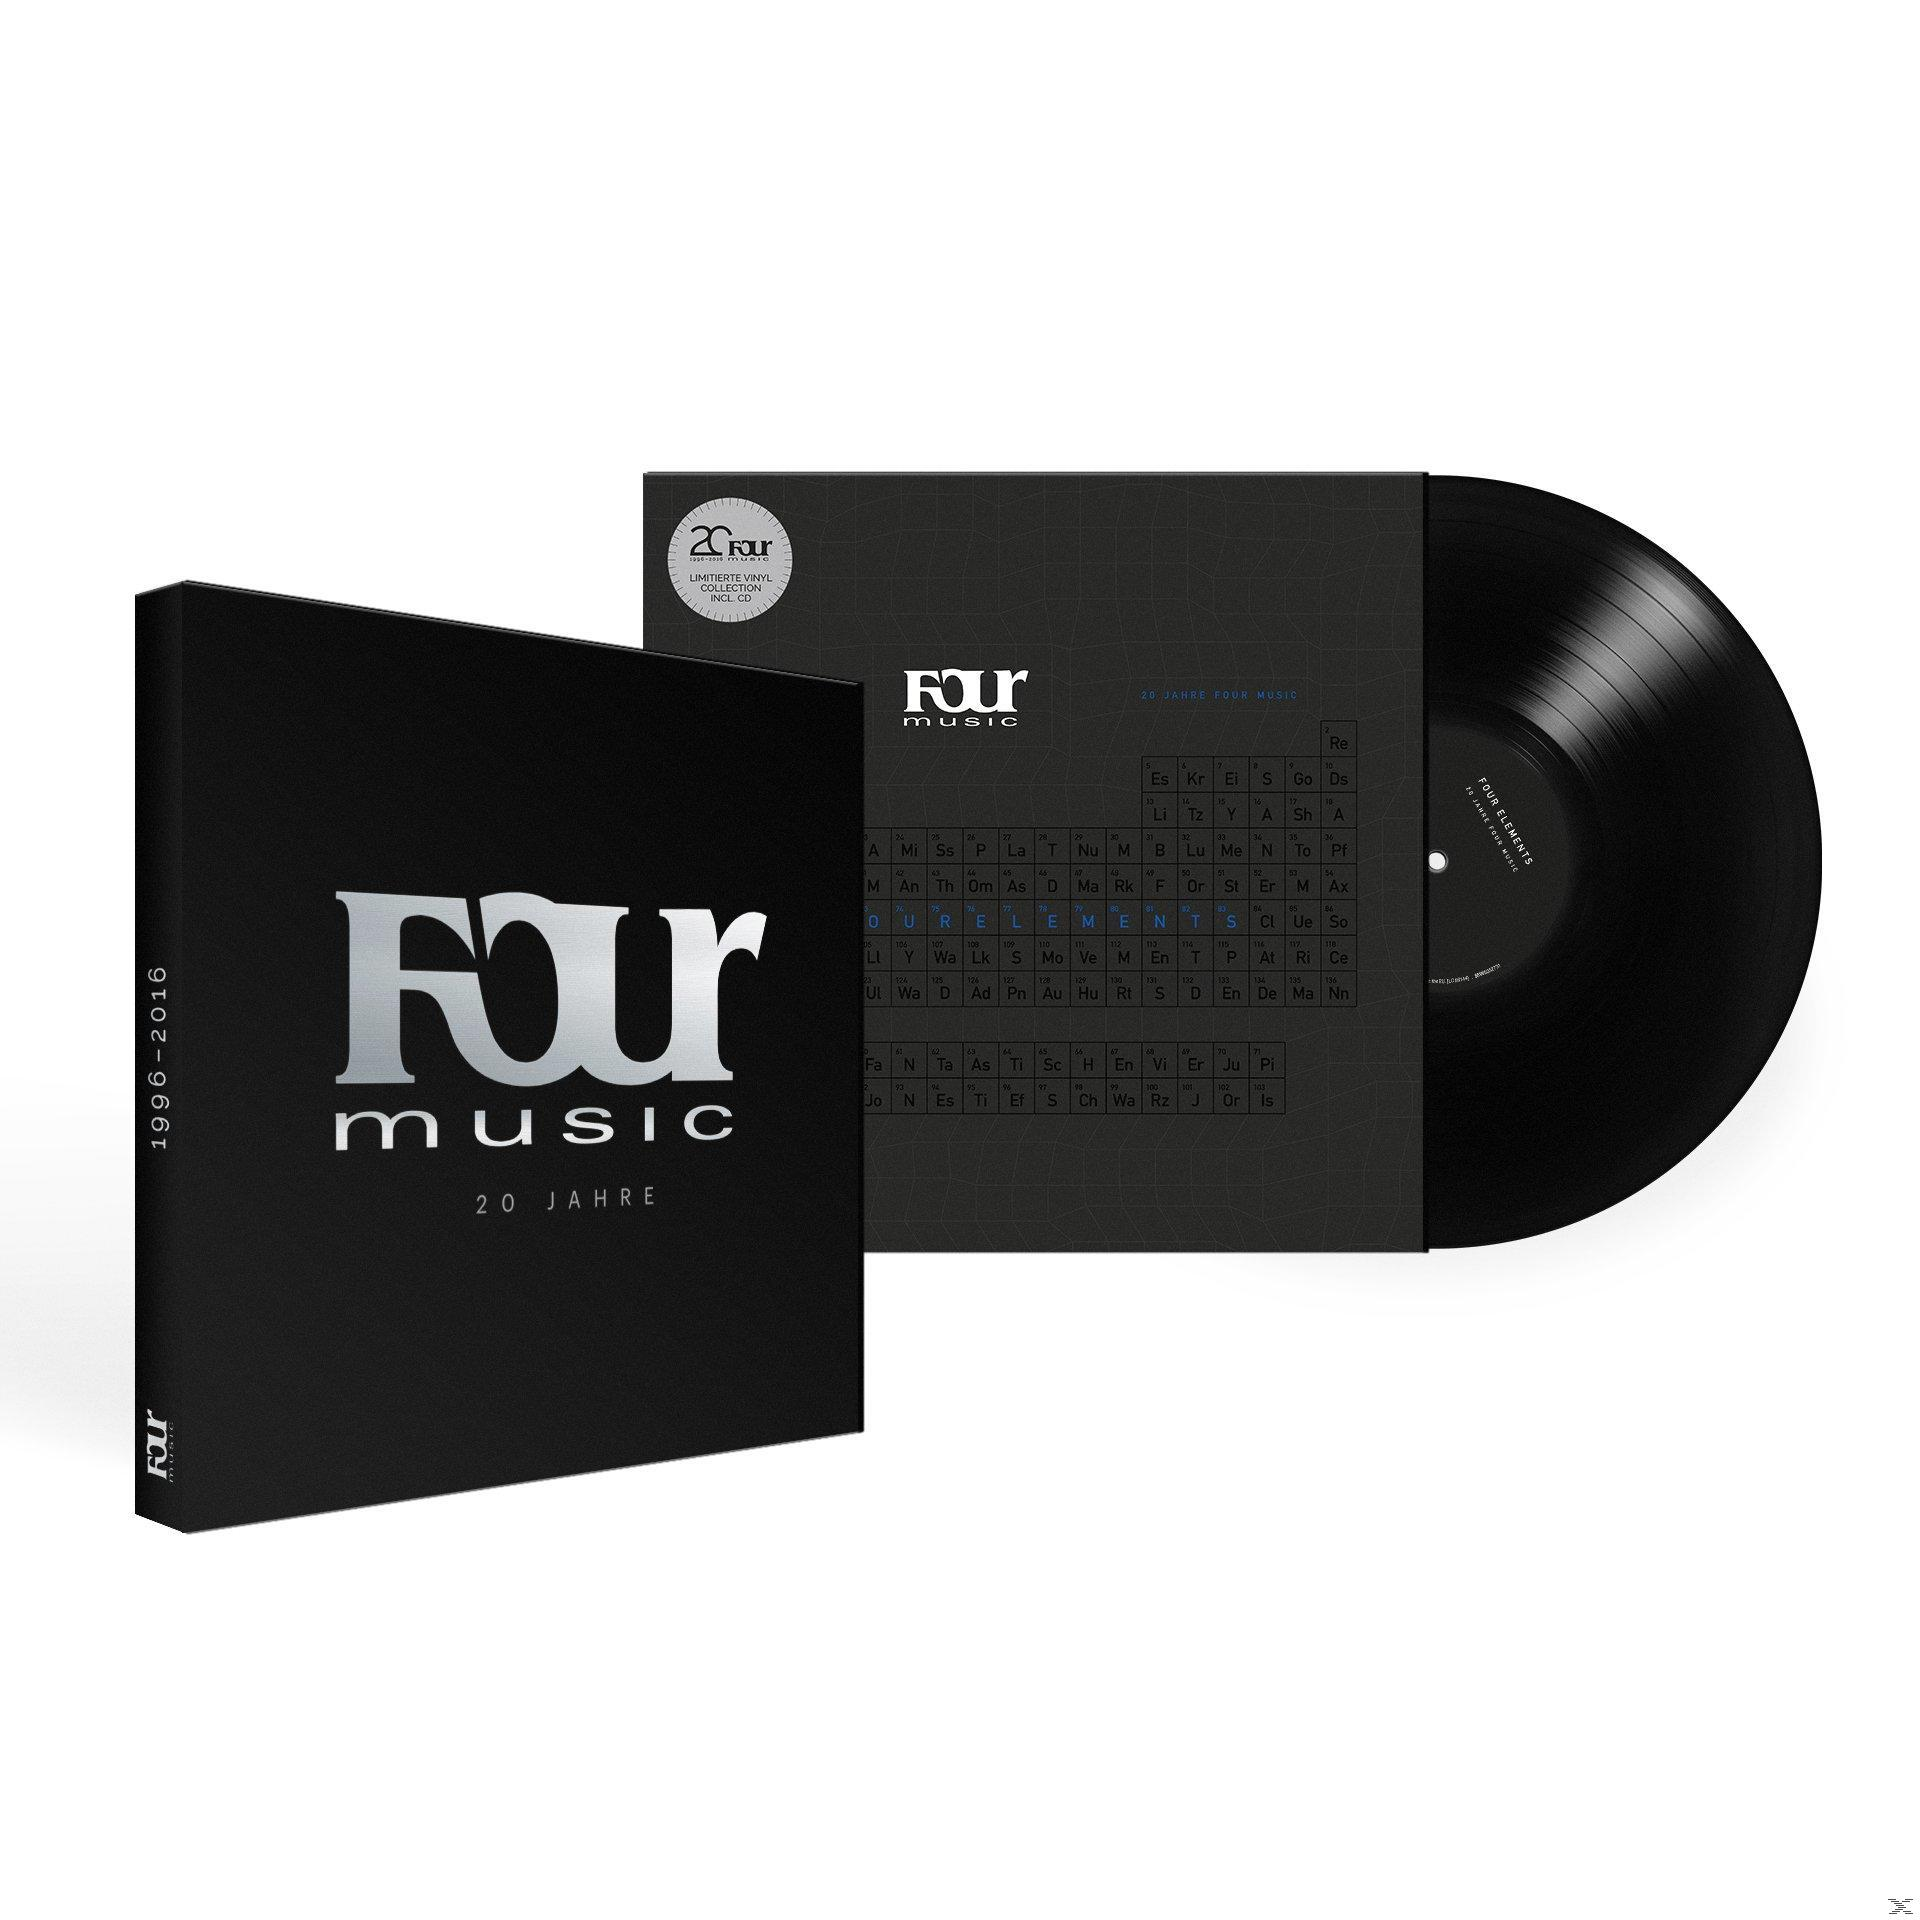 FOUR + - ELEMENTS Bonus-CD) 20 JAHRE MUSIC FOUR VARIOUS - - (LP